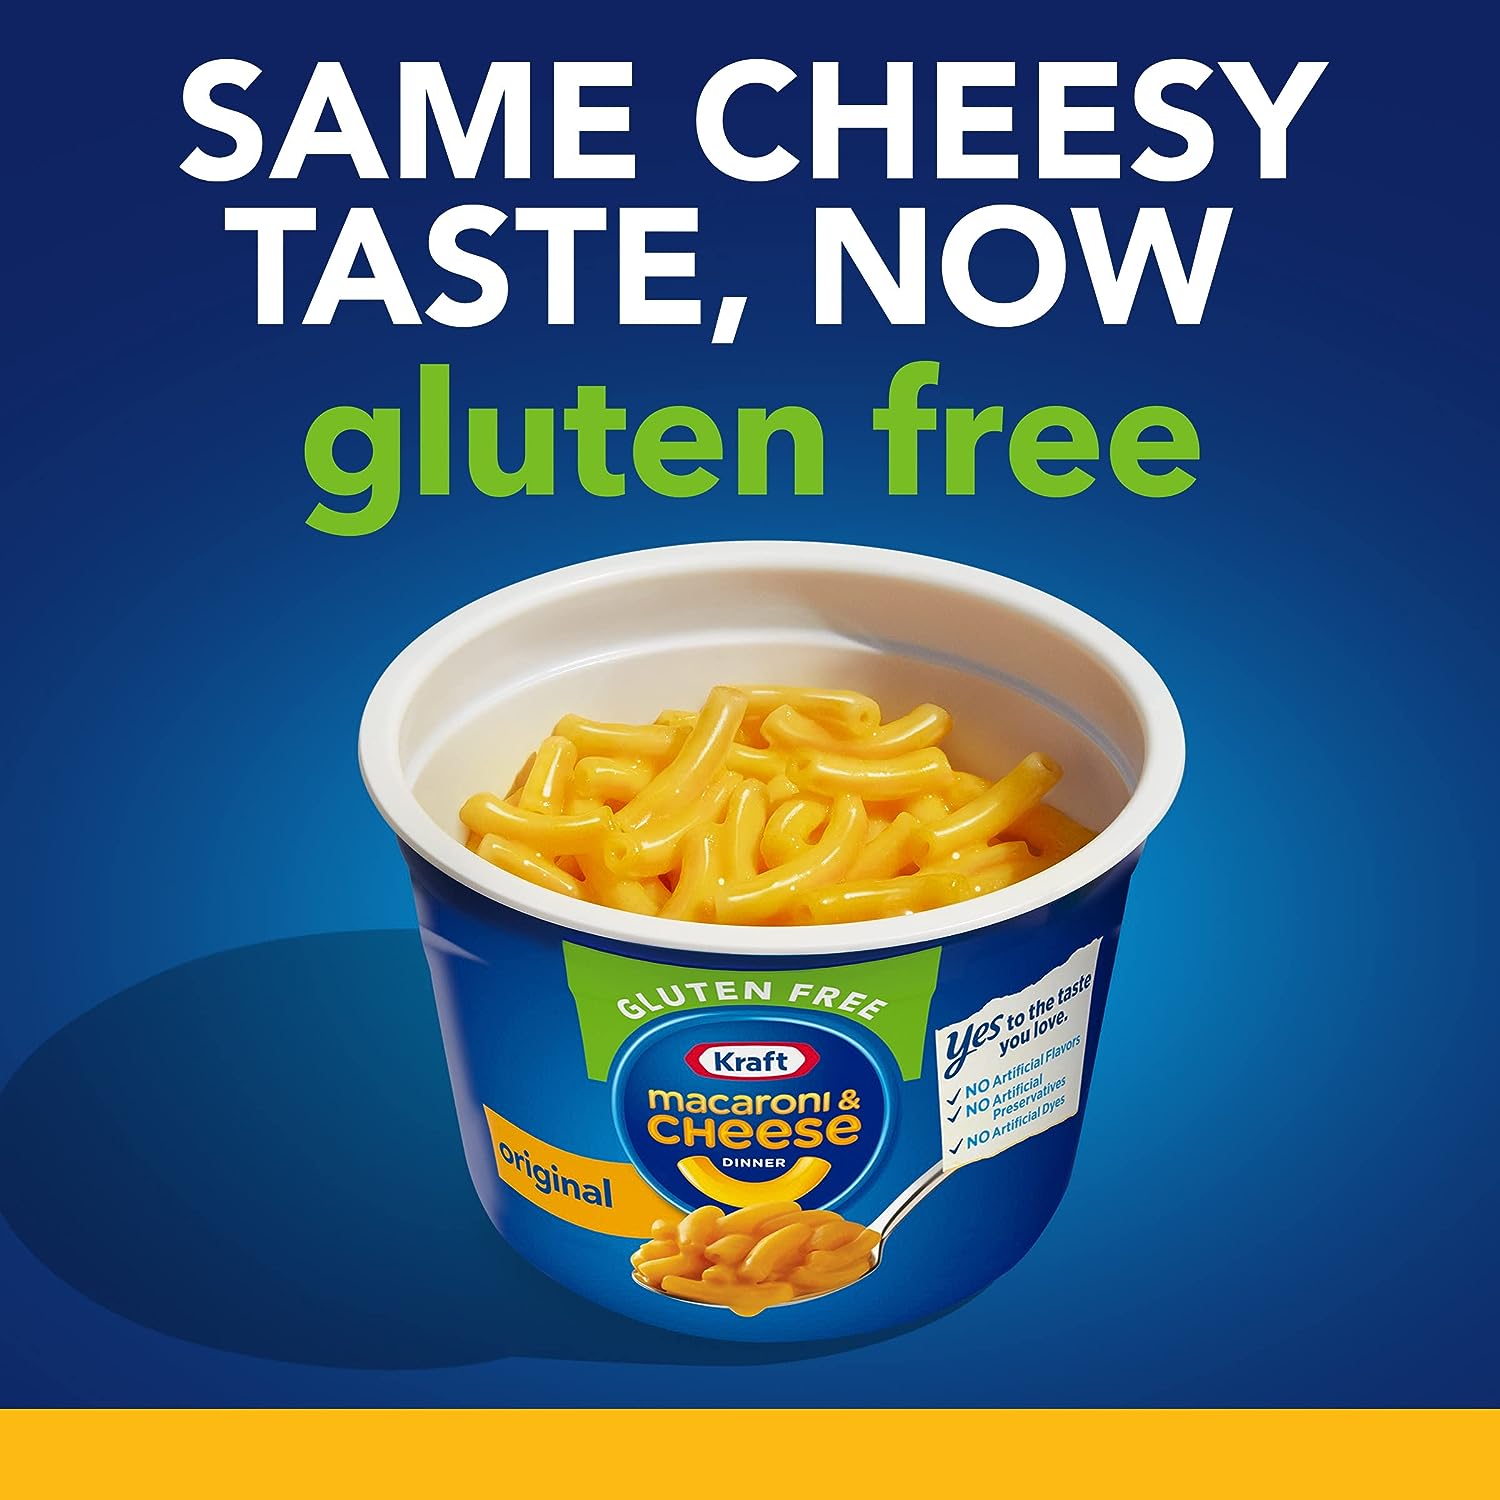 Kraft Original Macaroni & Cheese Dinner Review - Daily Gluten